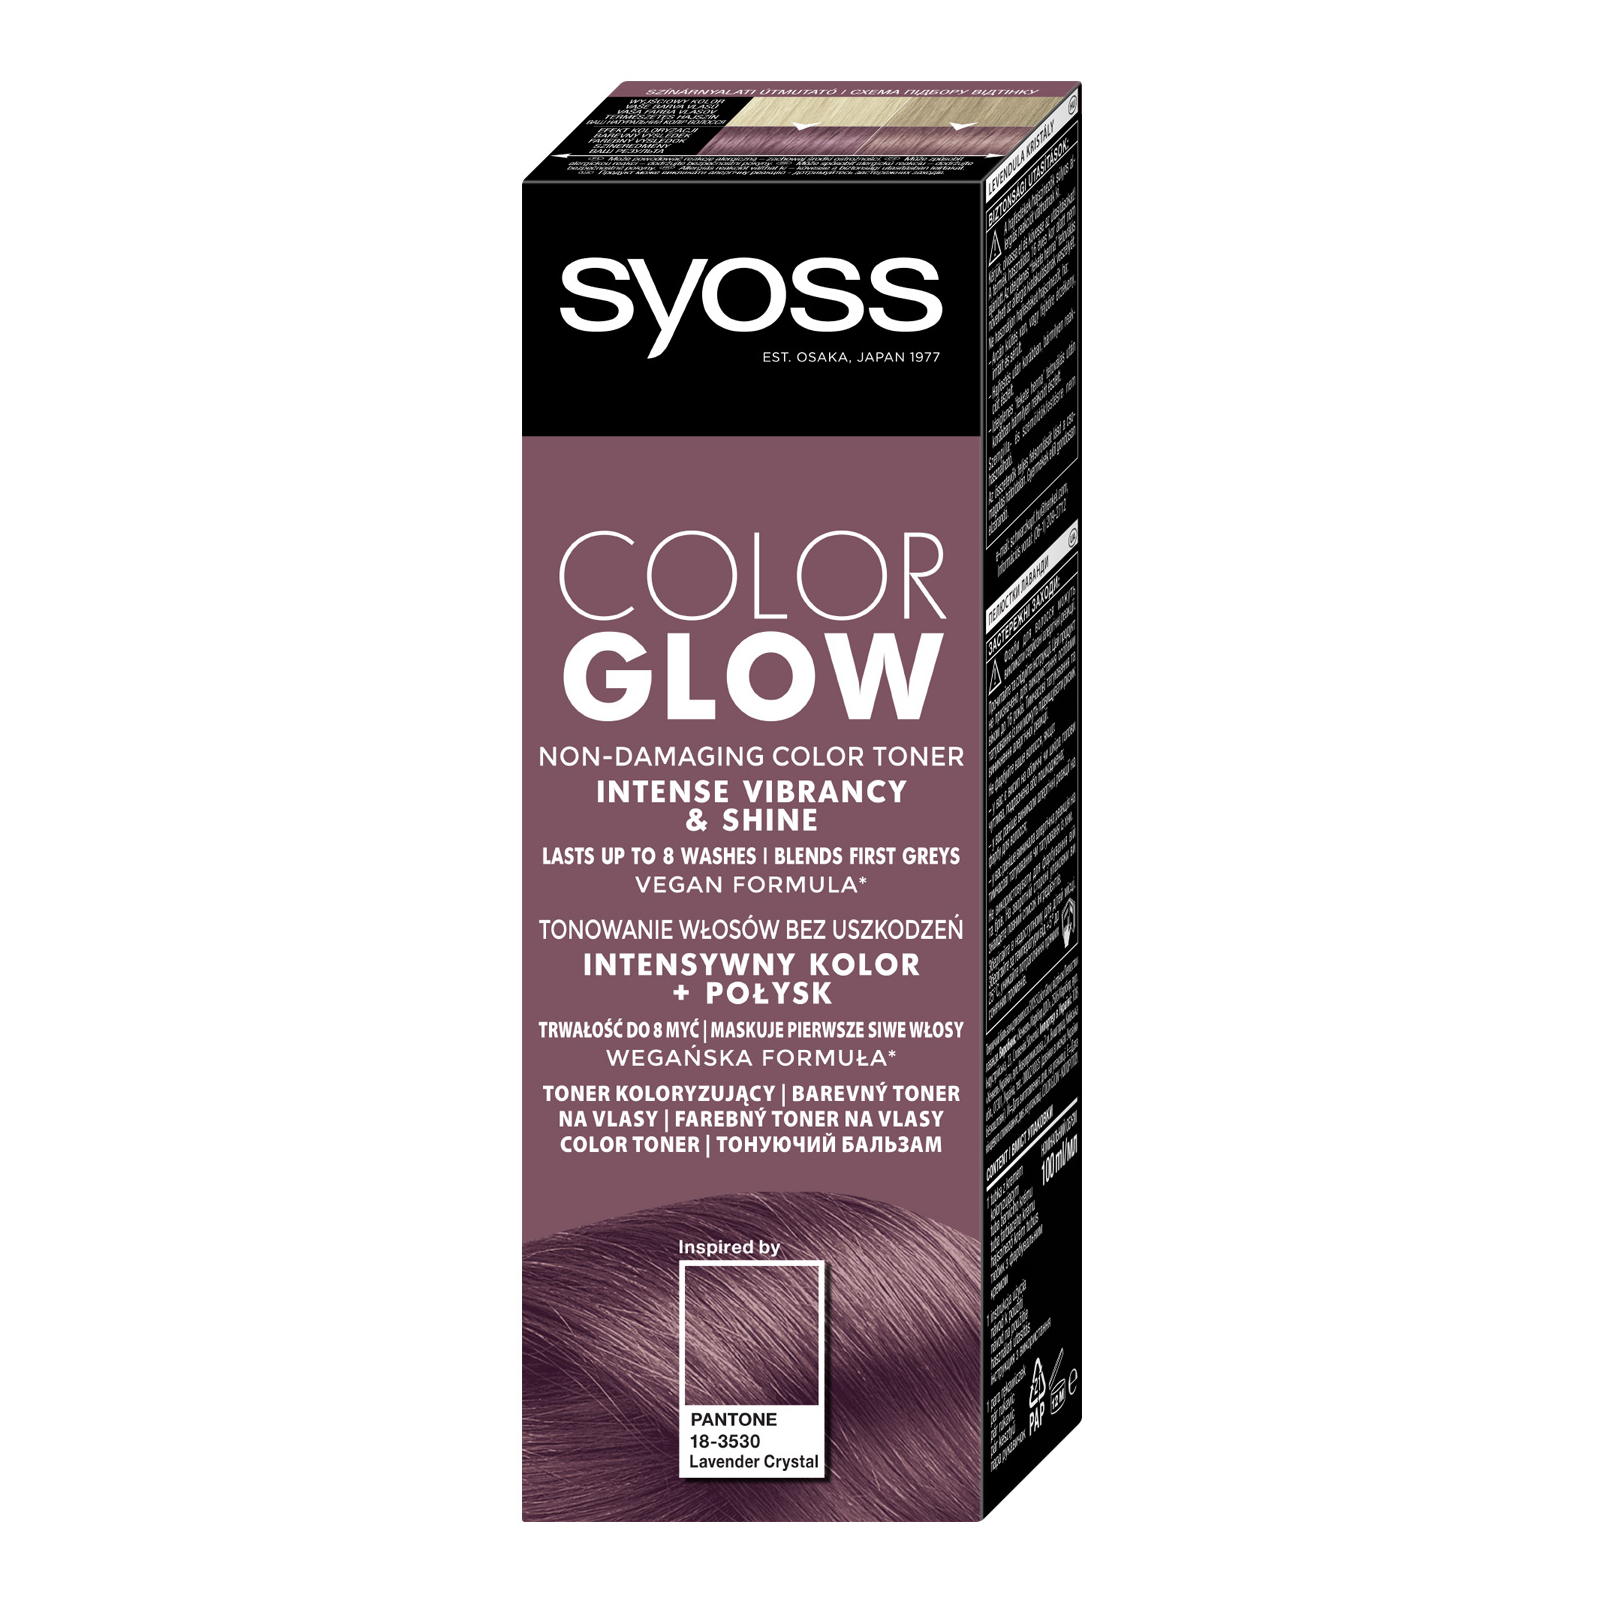 Оттеночный бальзам Syoss Color Glow Cool Brunette - Холодный Каштановый 100 мл (9000101679427) изображение 2